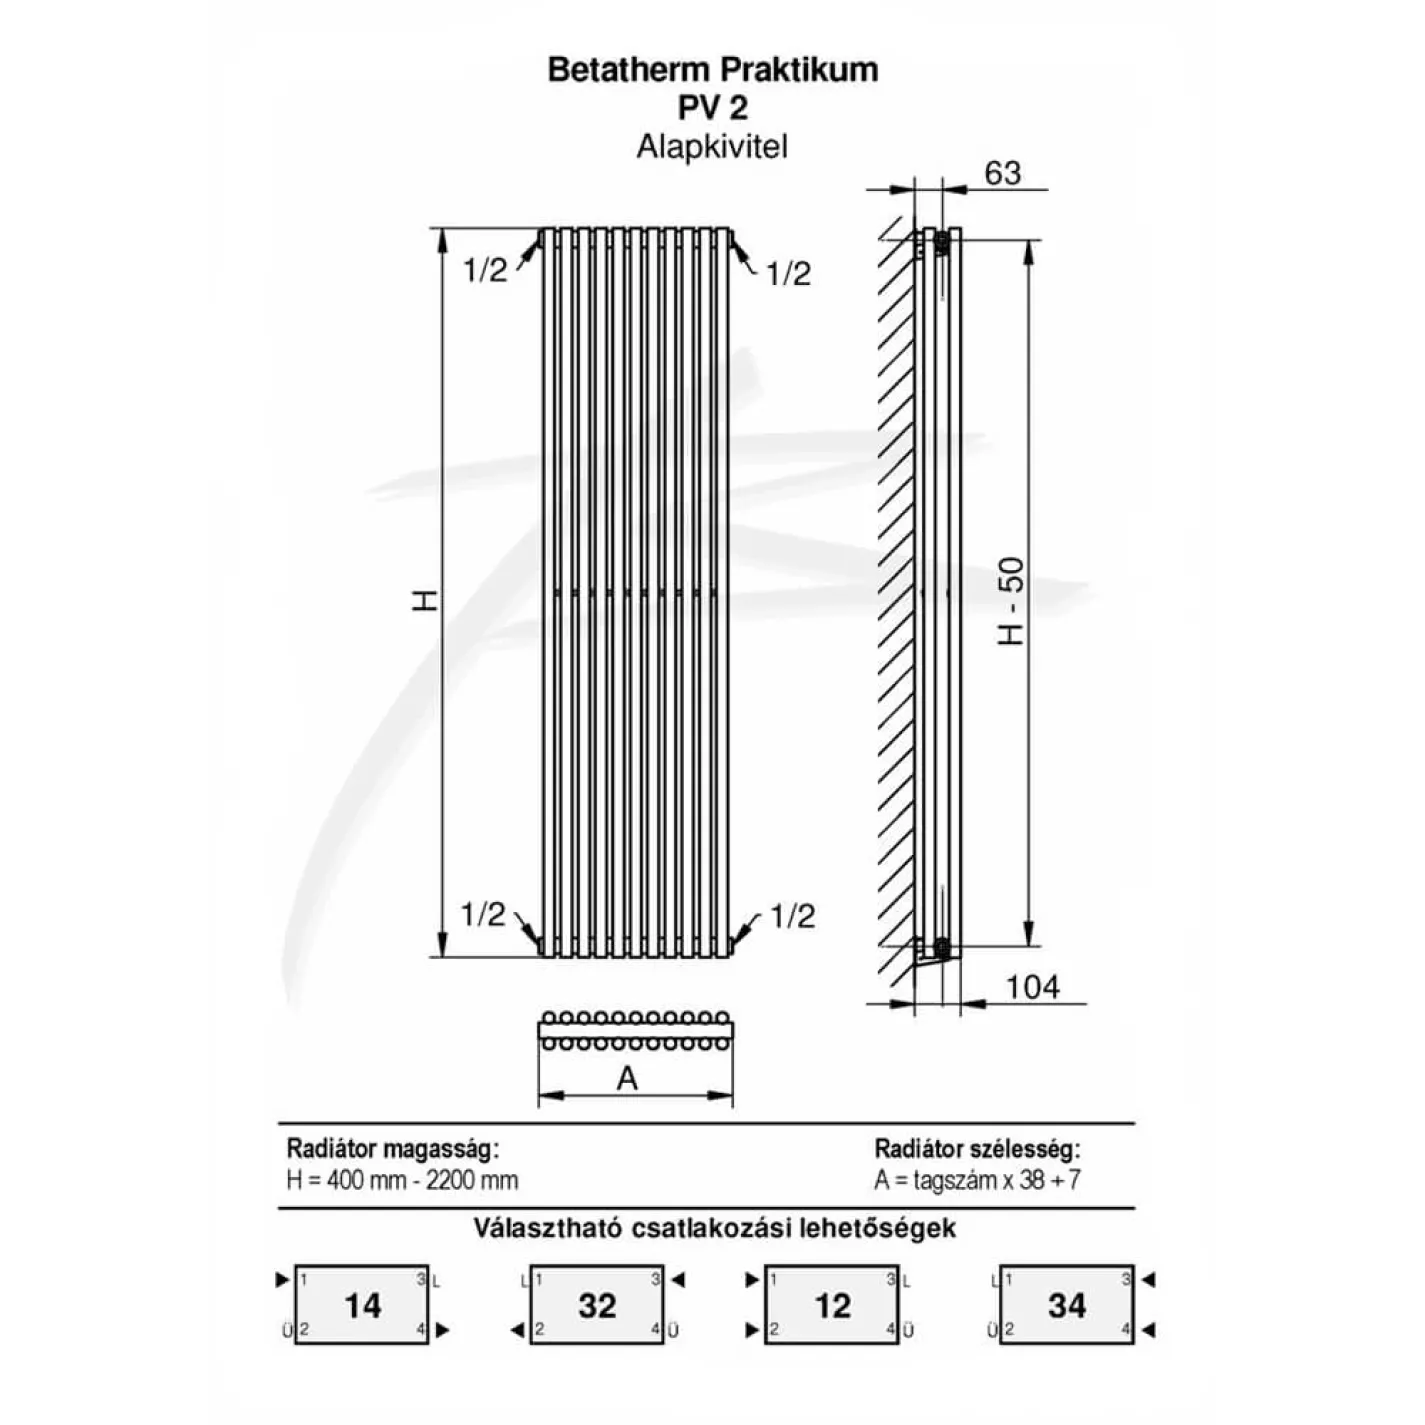 Трубчастый радиатор Betatherm Praktikum 2 1800x425x104 мм вертикальный RAL9005 - Фото 2